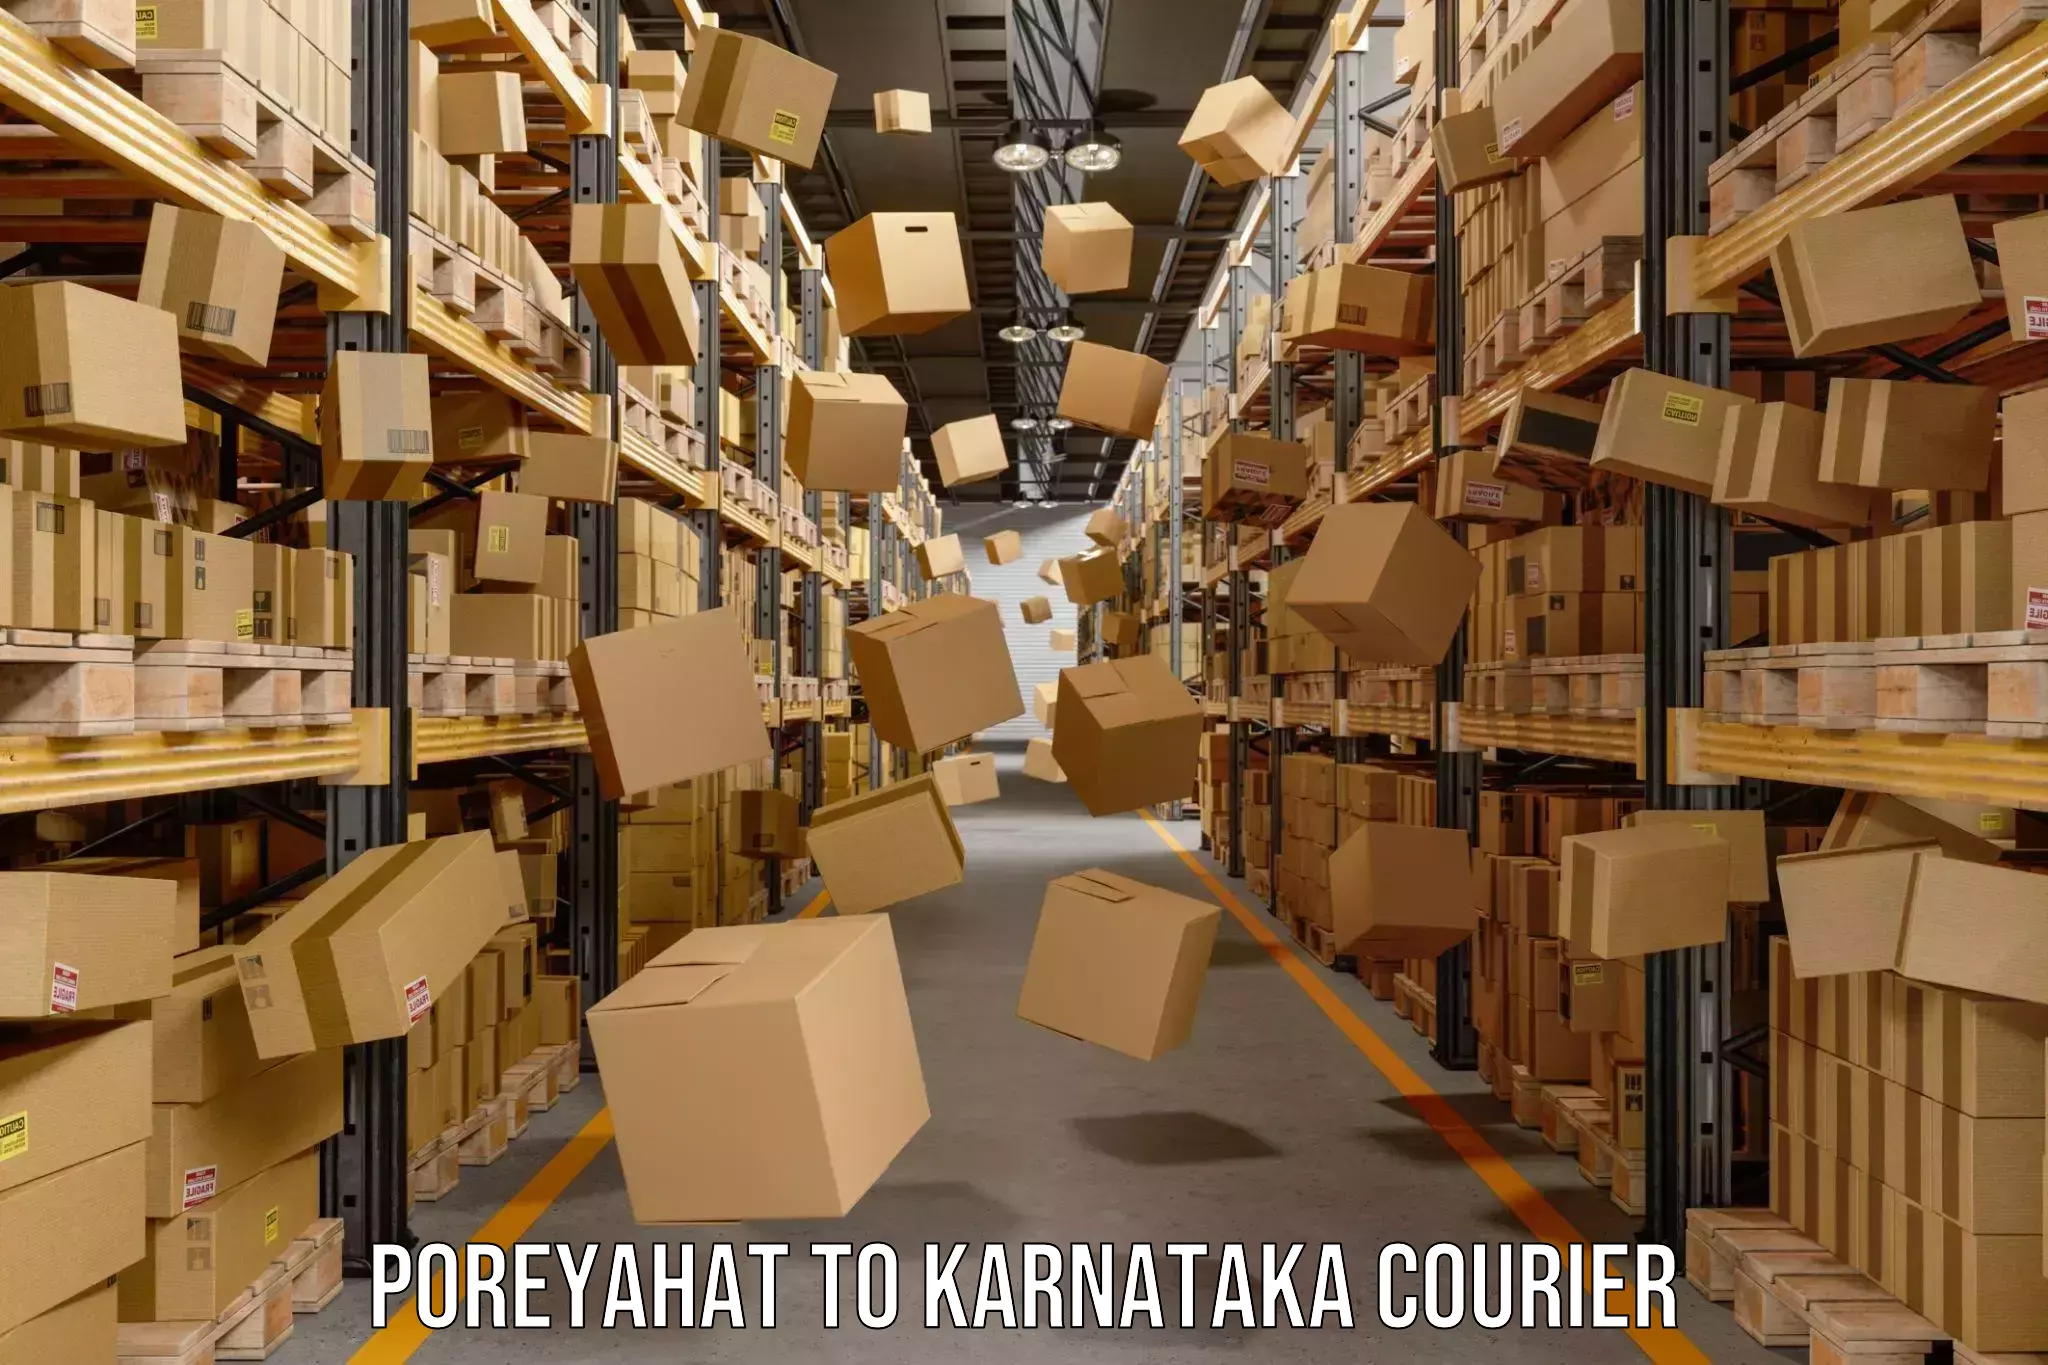 Courier membership Poreyahat to Karnataka